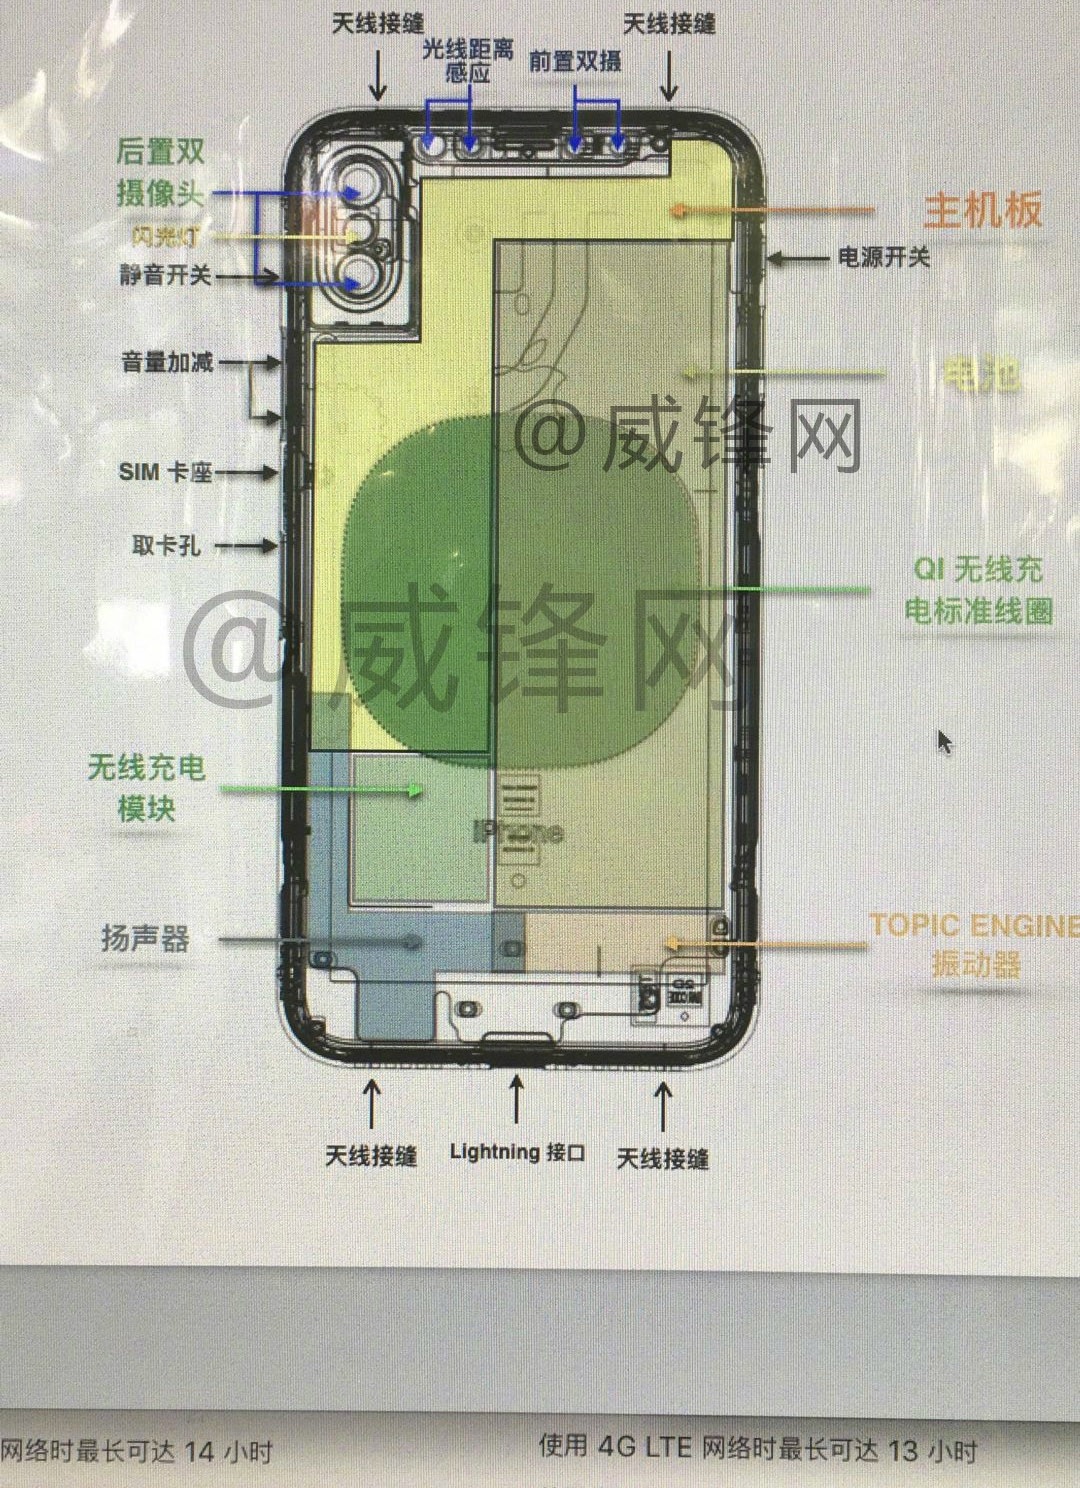 Detaillierte Skizze des iPhone 8